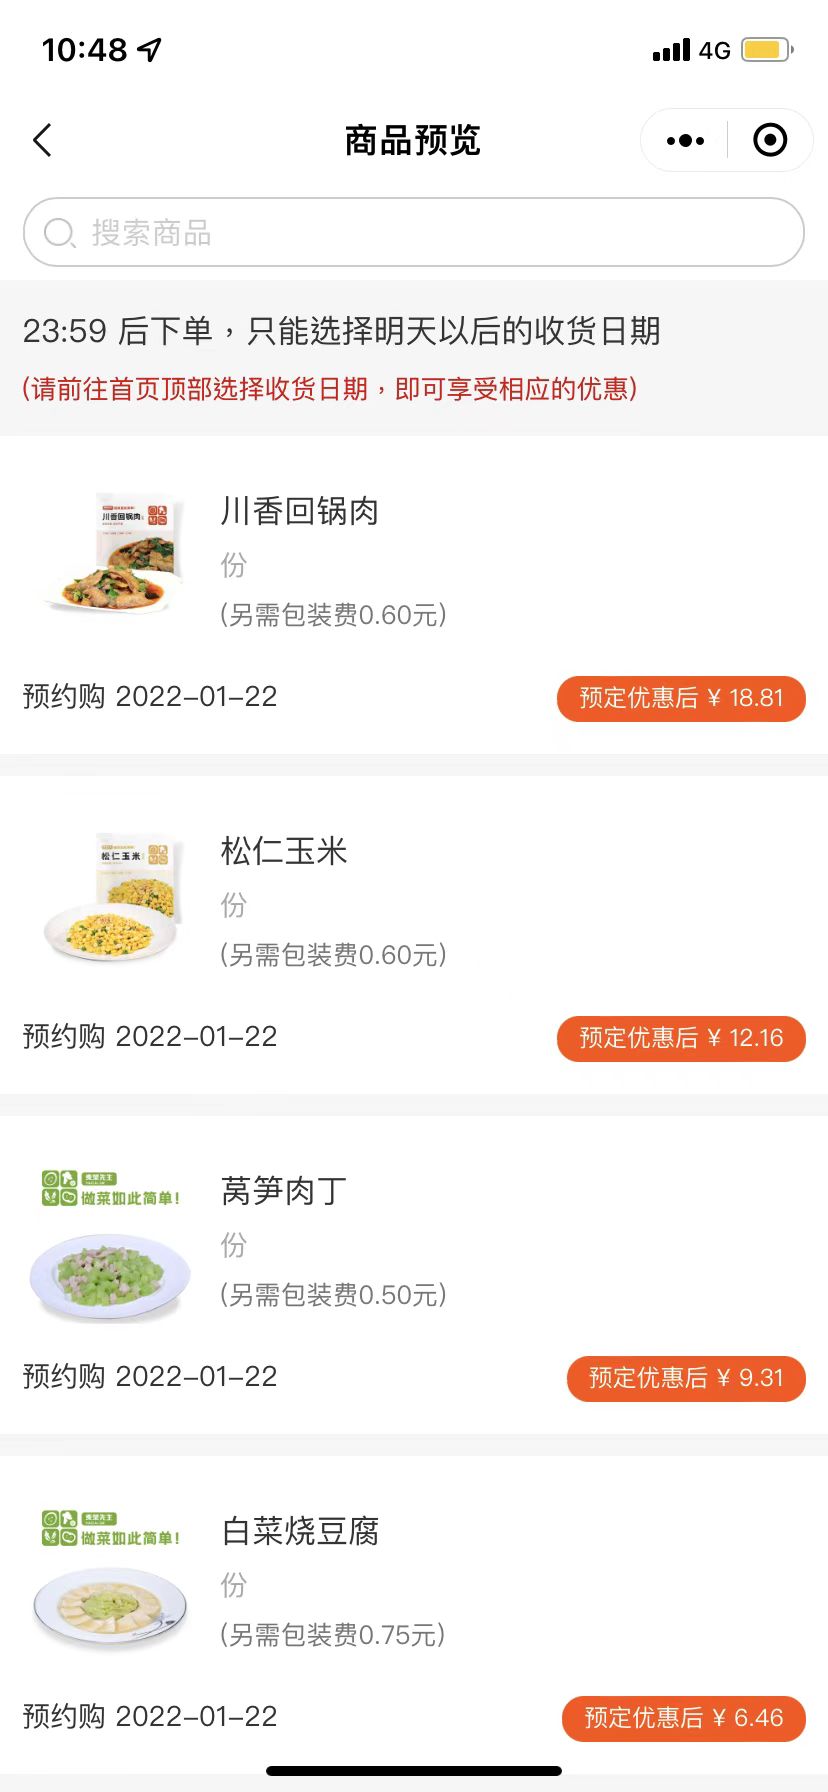 预制菜成郑州消费者的“新宠” 千味央厨正加紧生产